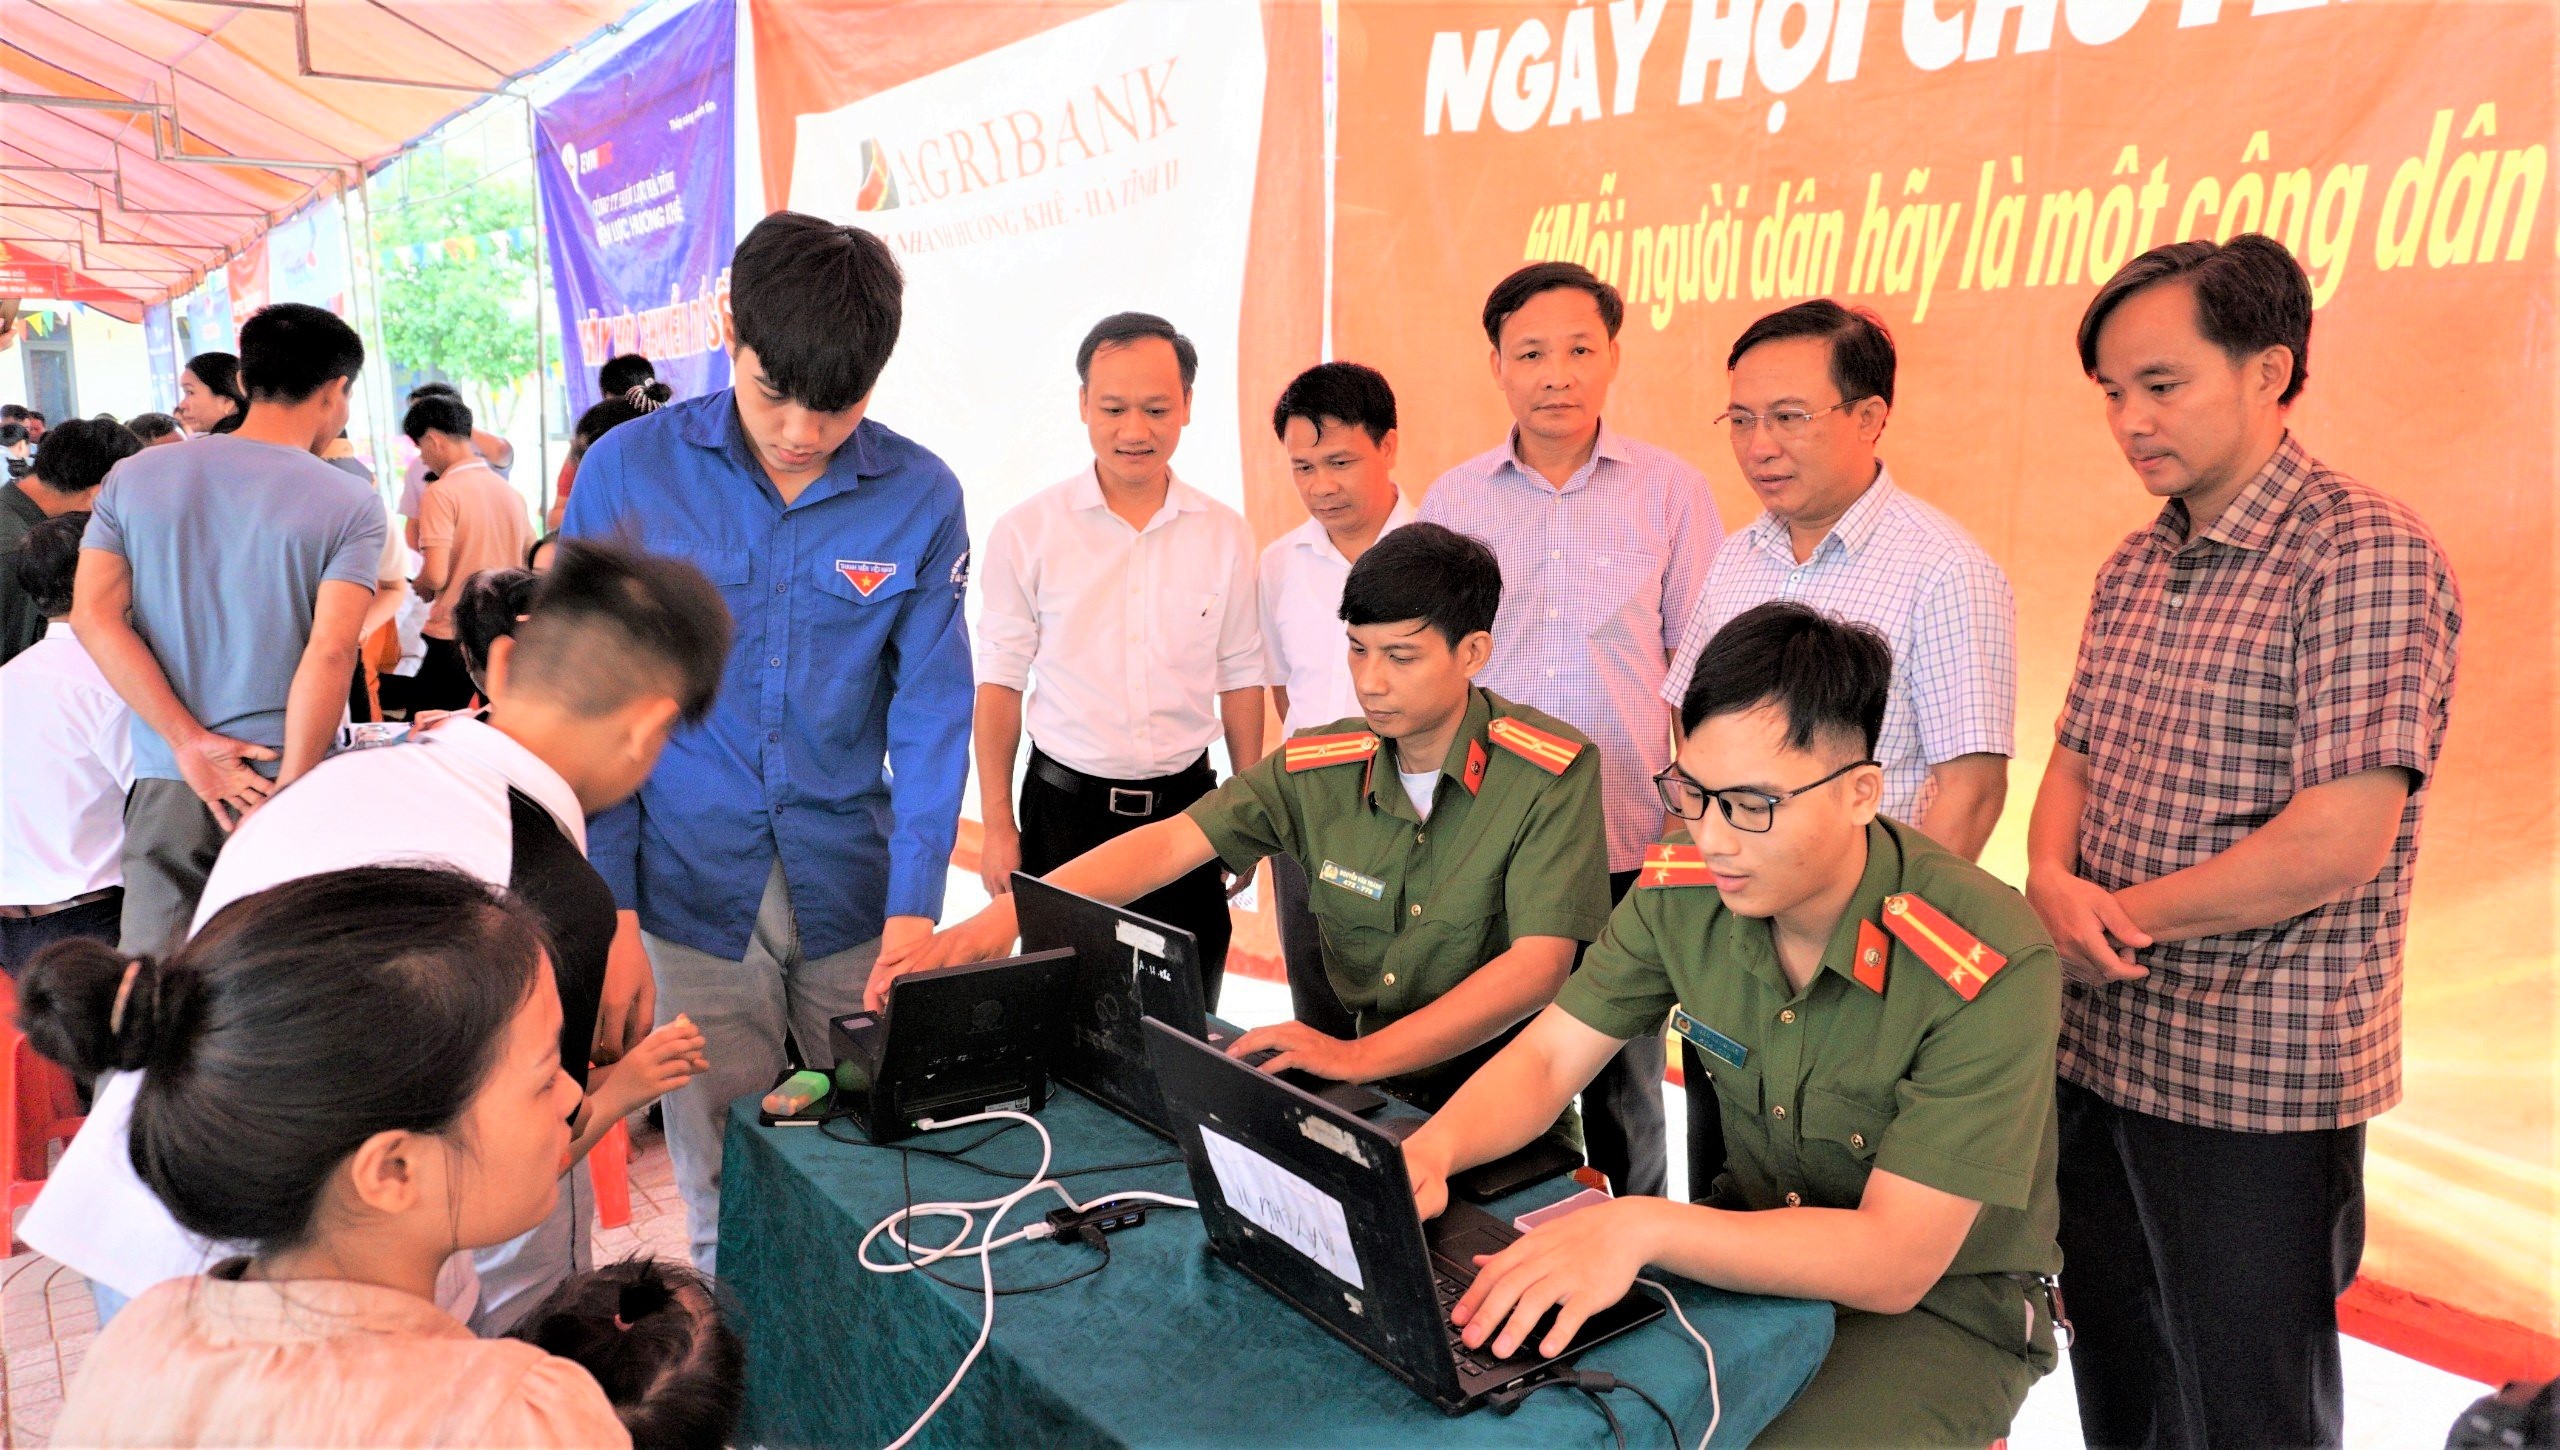 Hương Khê hoàn thành tổ chức Ngày hội Chuyển đổi số tại các địa phương